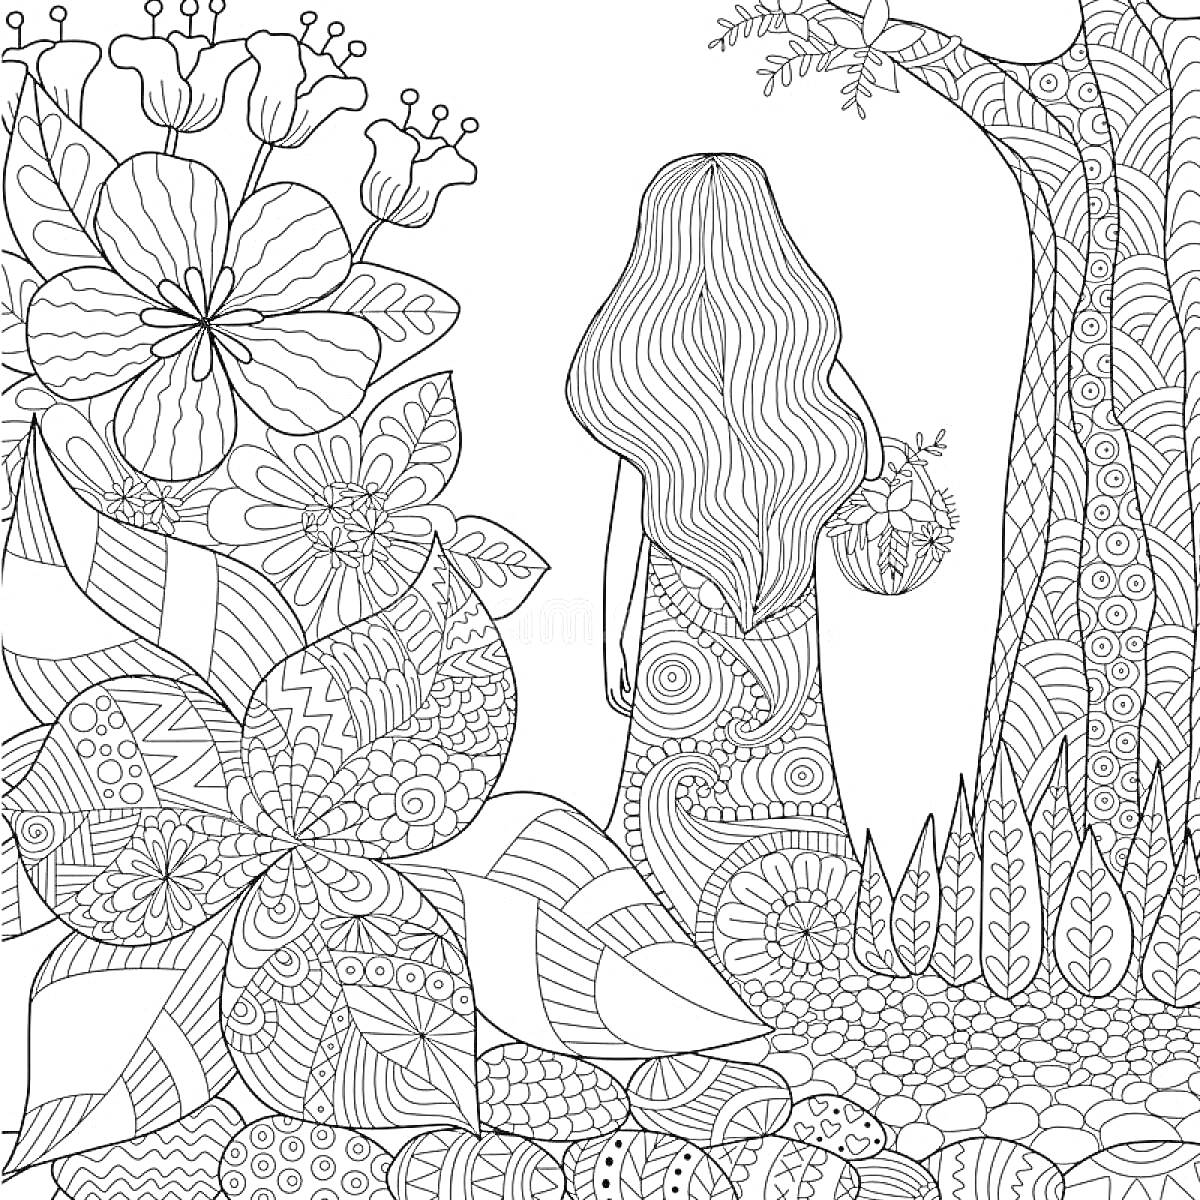 Раскраска Девочка в волшебном саду с большими цветами и деревом